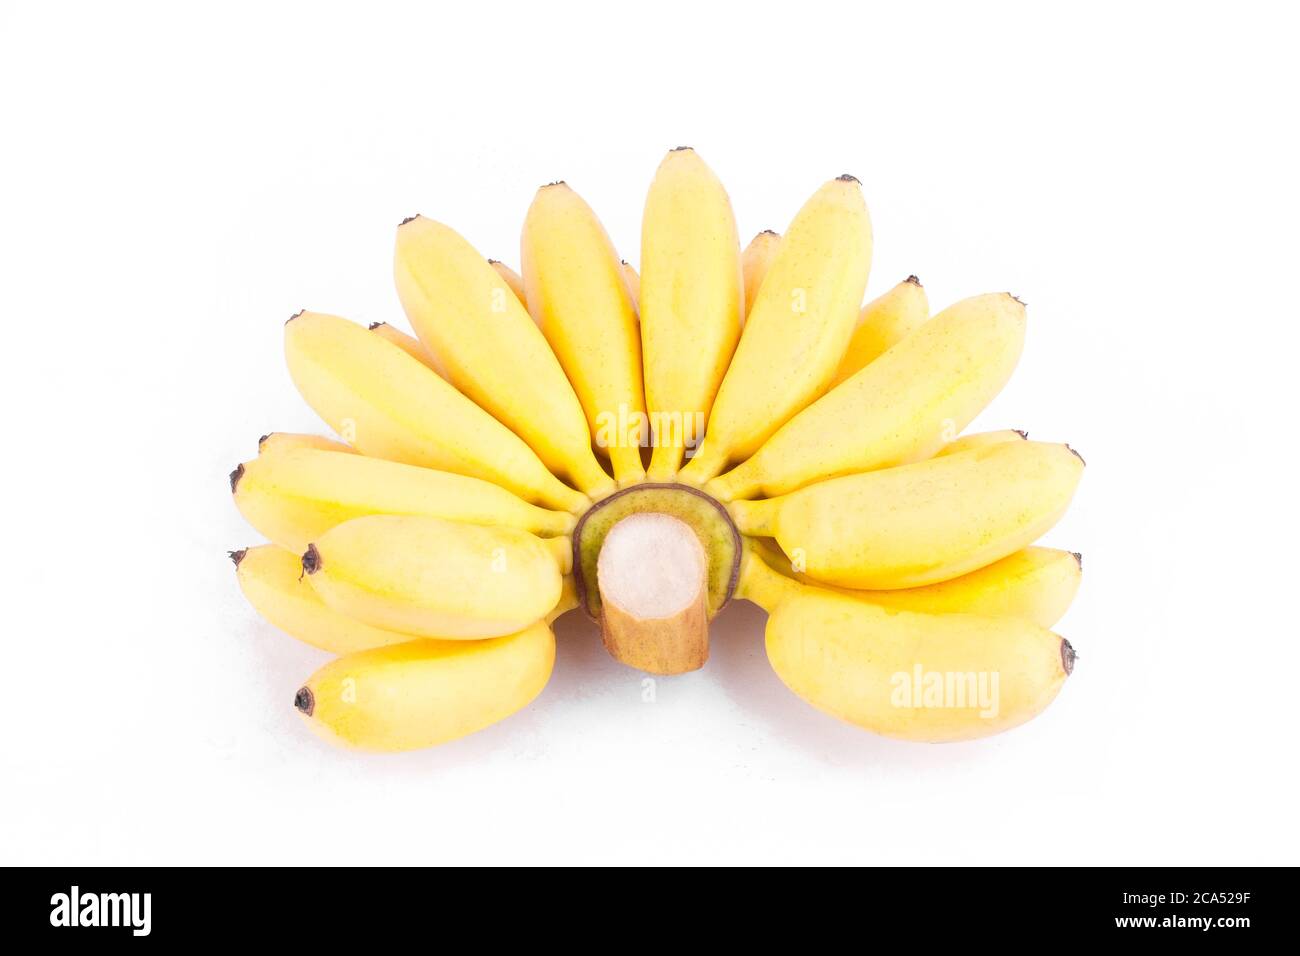 Mano madura de plátanos de oro o Lady Finger plátano sobre fondo blanco sano Pisang Mas Banana fruta comida aislada Foto de stock